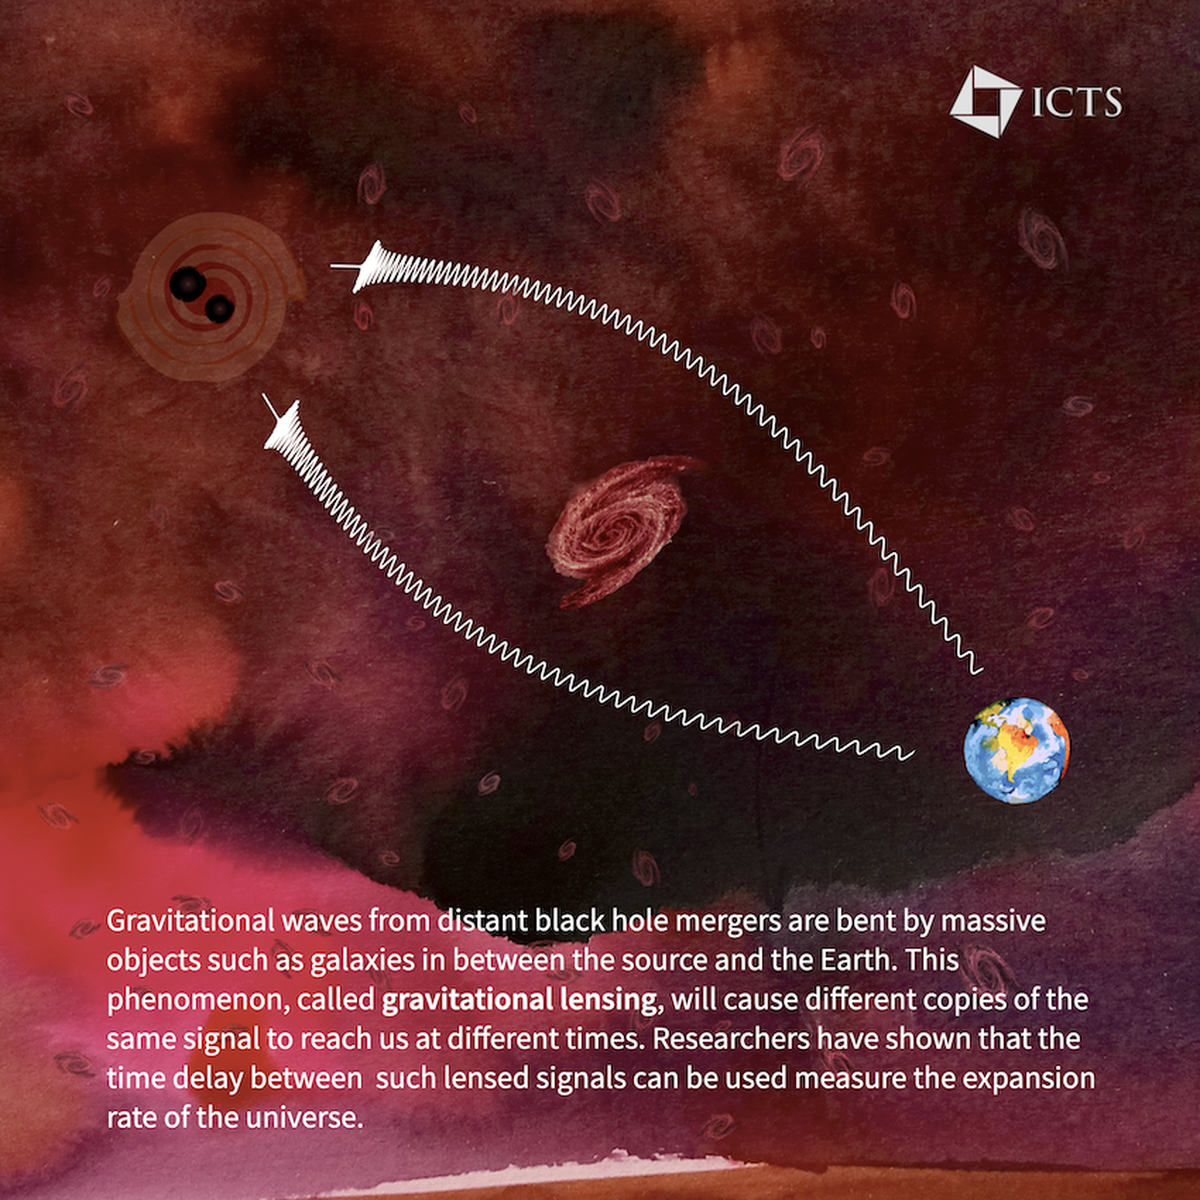 Infographic explaining lensing of gravitational waves.